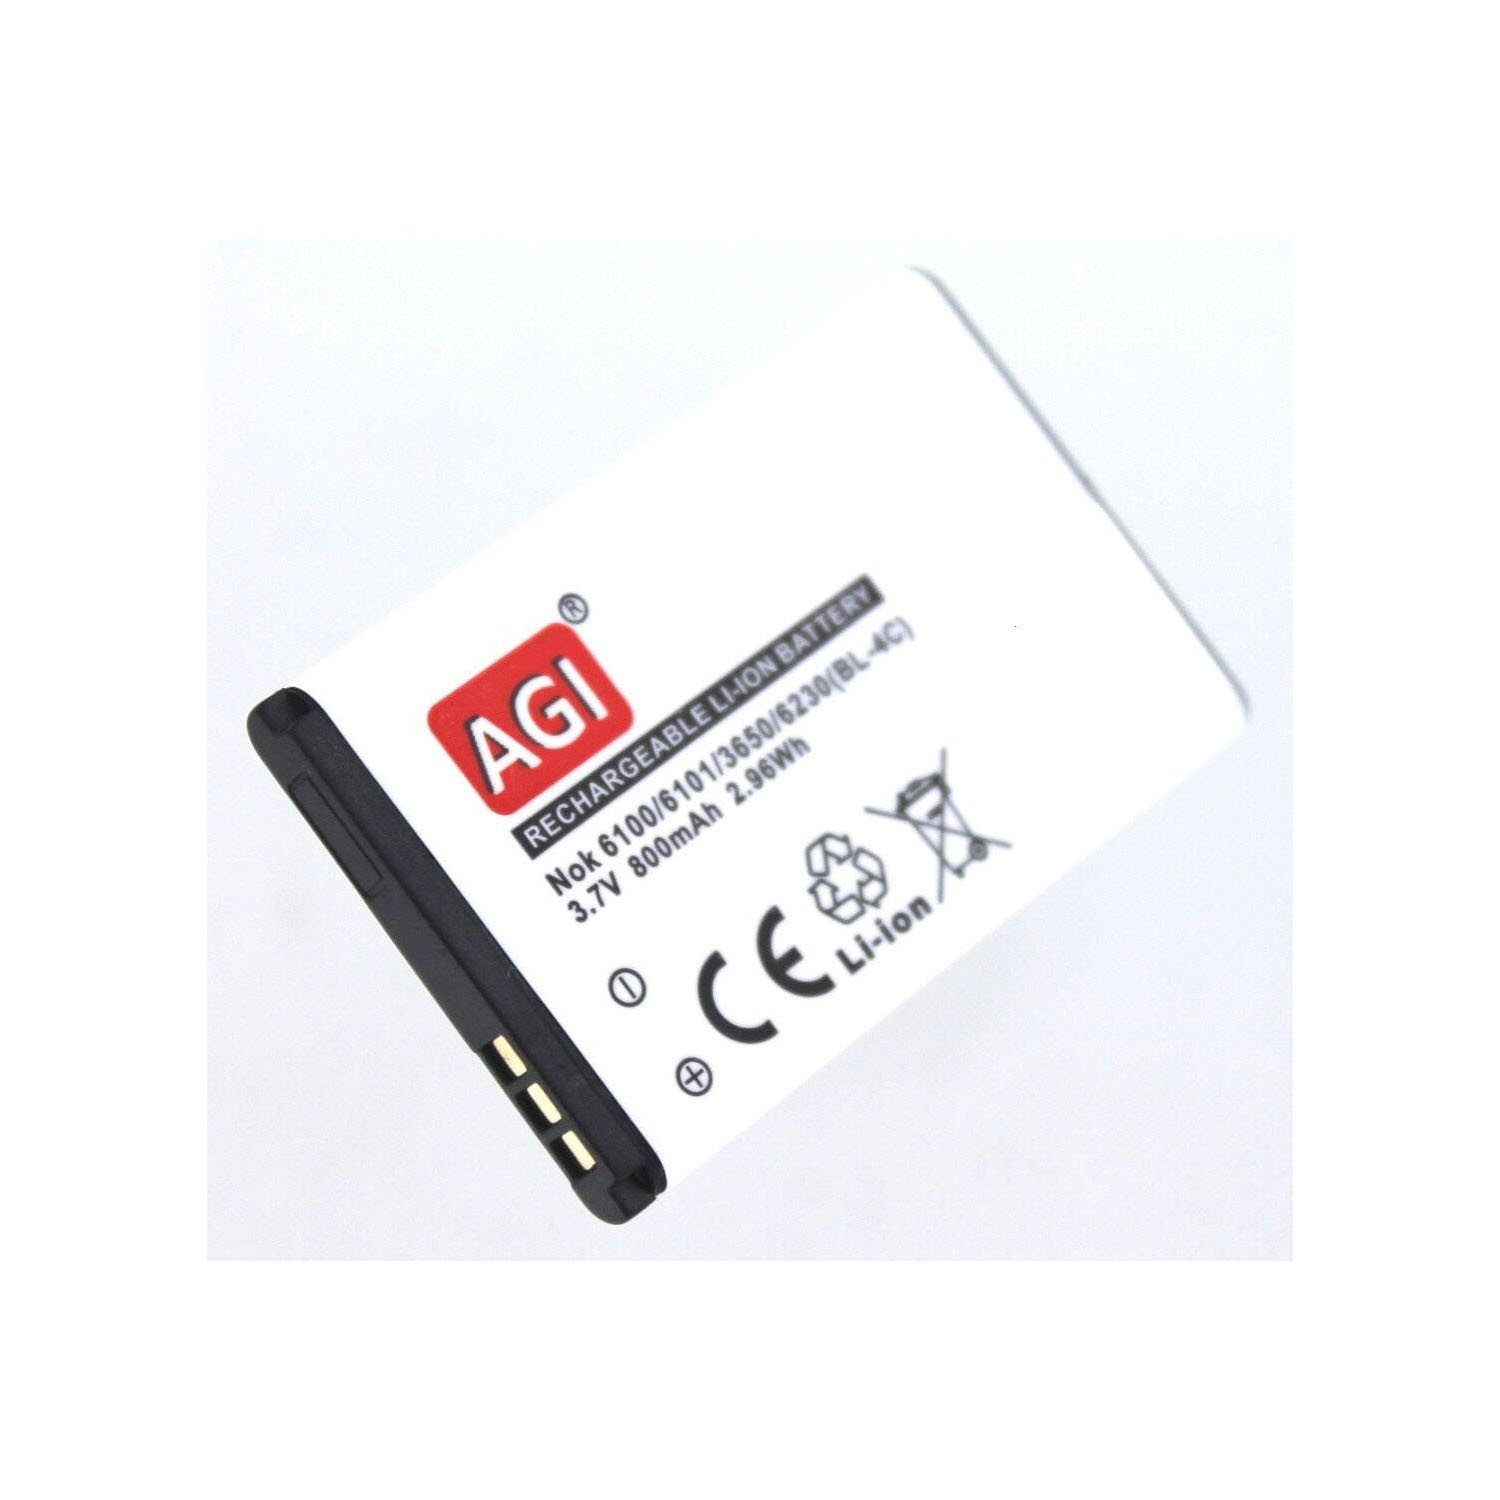 AGI Akku mAh kompatibel 3.7 750 Becco mit Volt, Li-Ion Olympia Plus Handy-/Smartphoneakku, Li-Ion